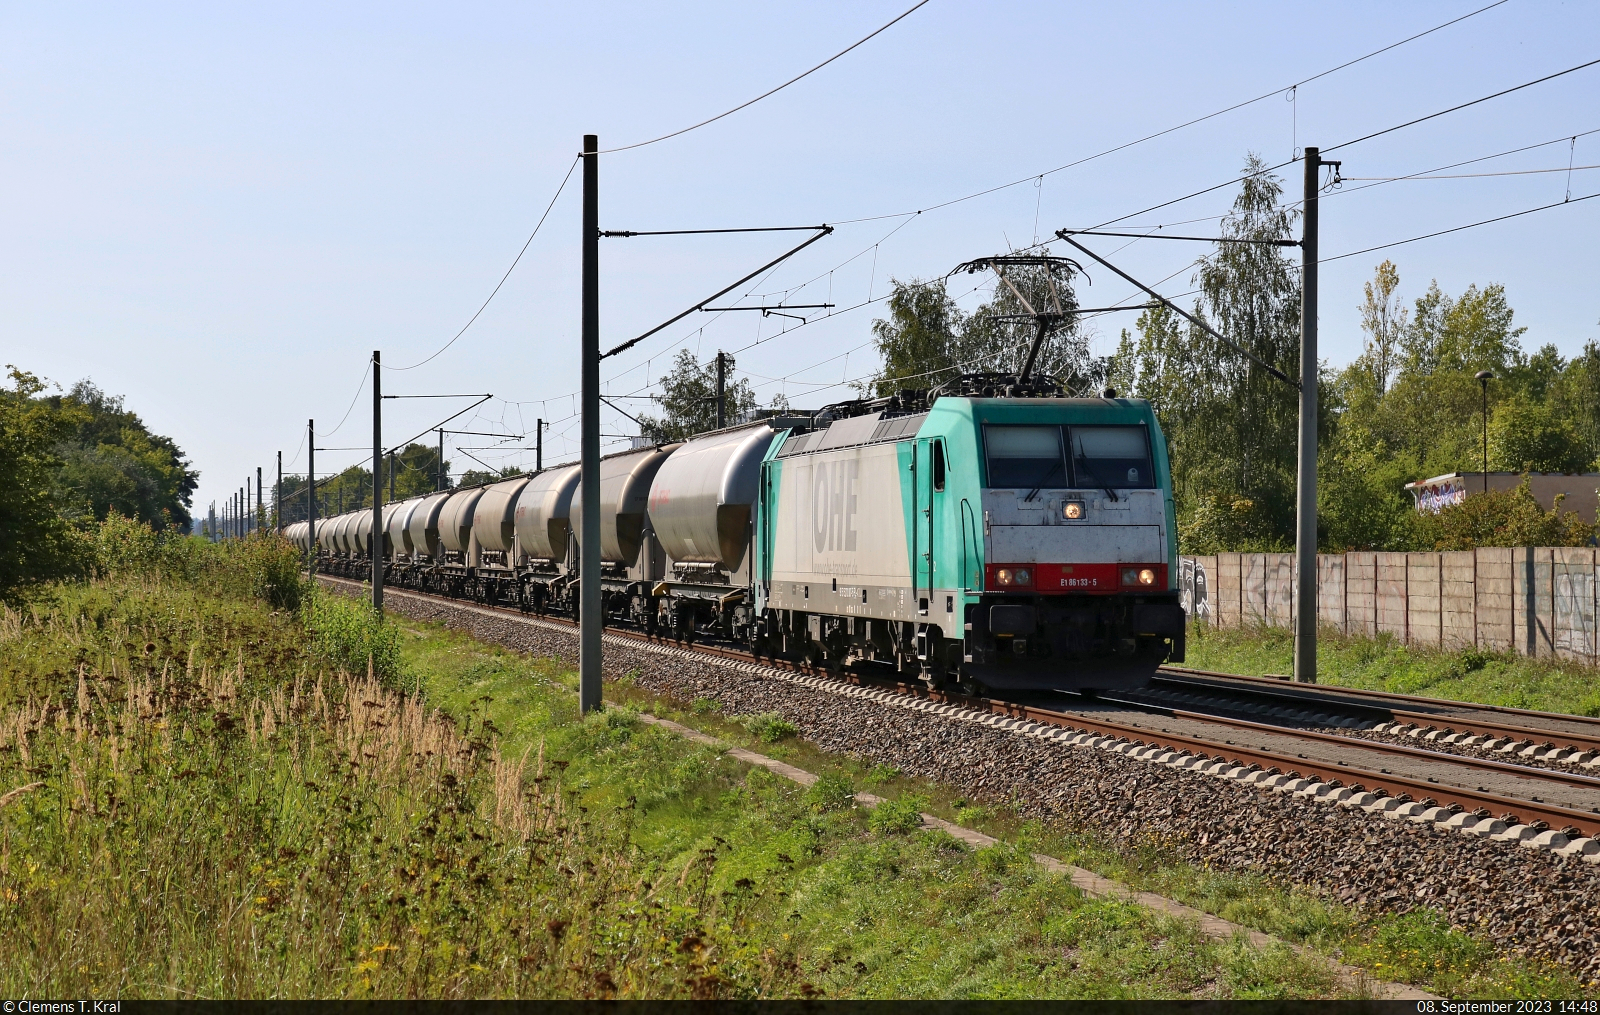 186 133-5 (91 51 5270 007-5 PL-TM) schleppt Silowagen durch Hohenthurm Richtung Bitterfeld.

🧰 Alpha Trains Belgium NV/SA, vermietet an Transchem Sp. z o.o.
🕓 8.9.2023 | 14:48 Uhr